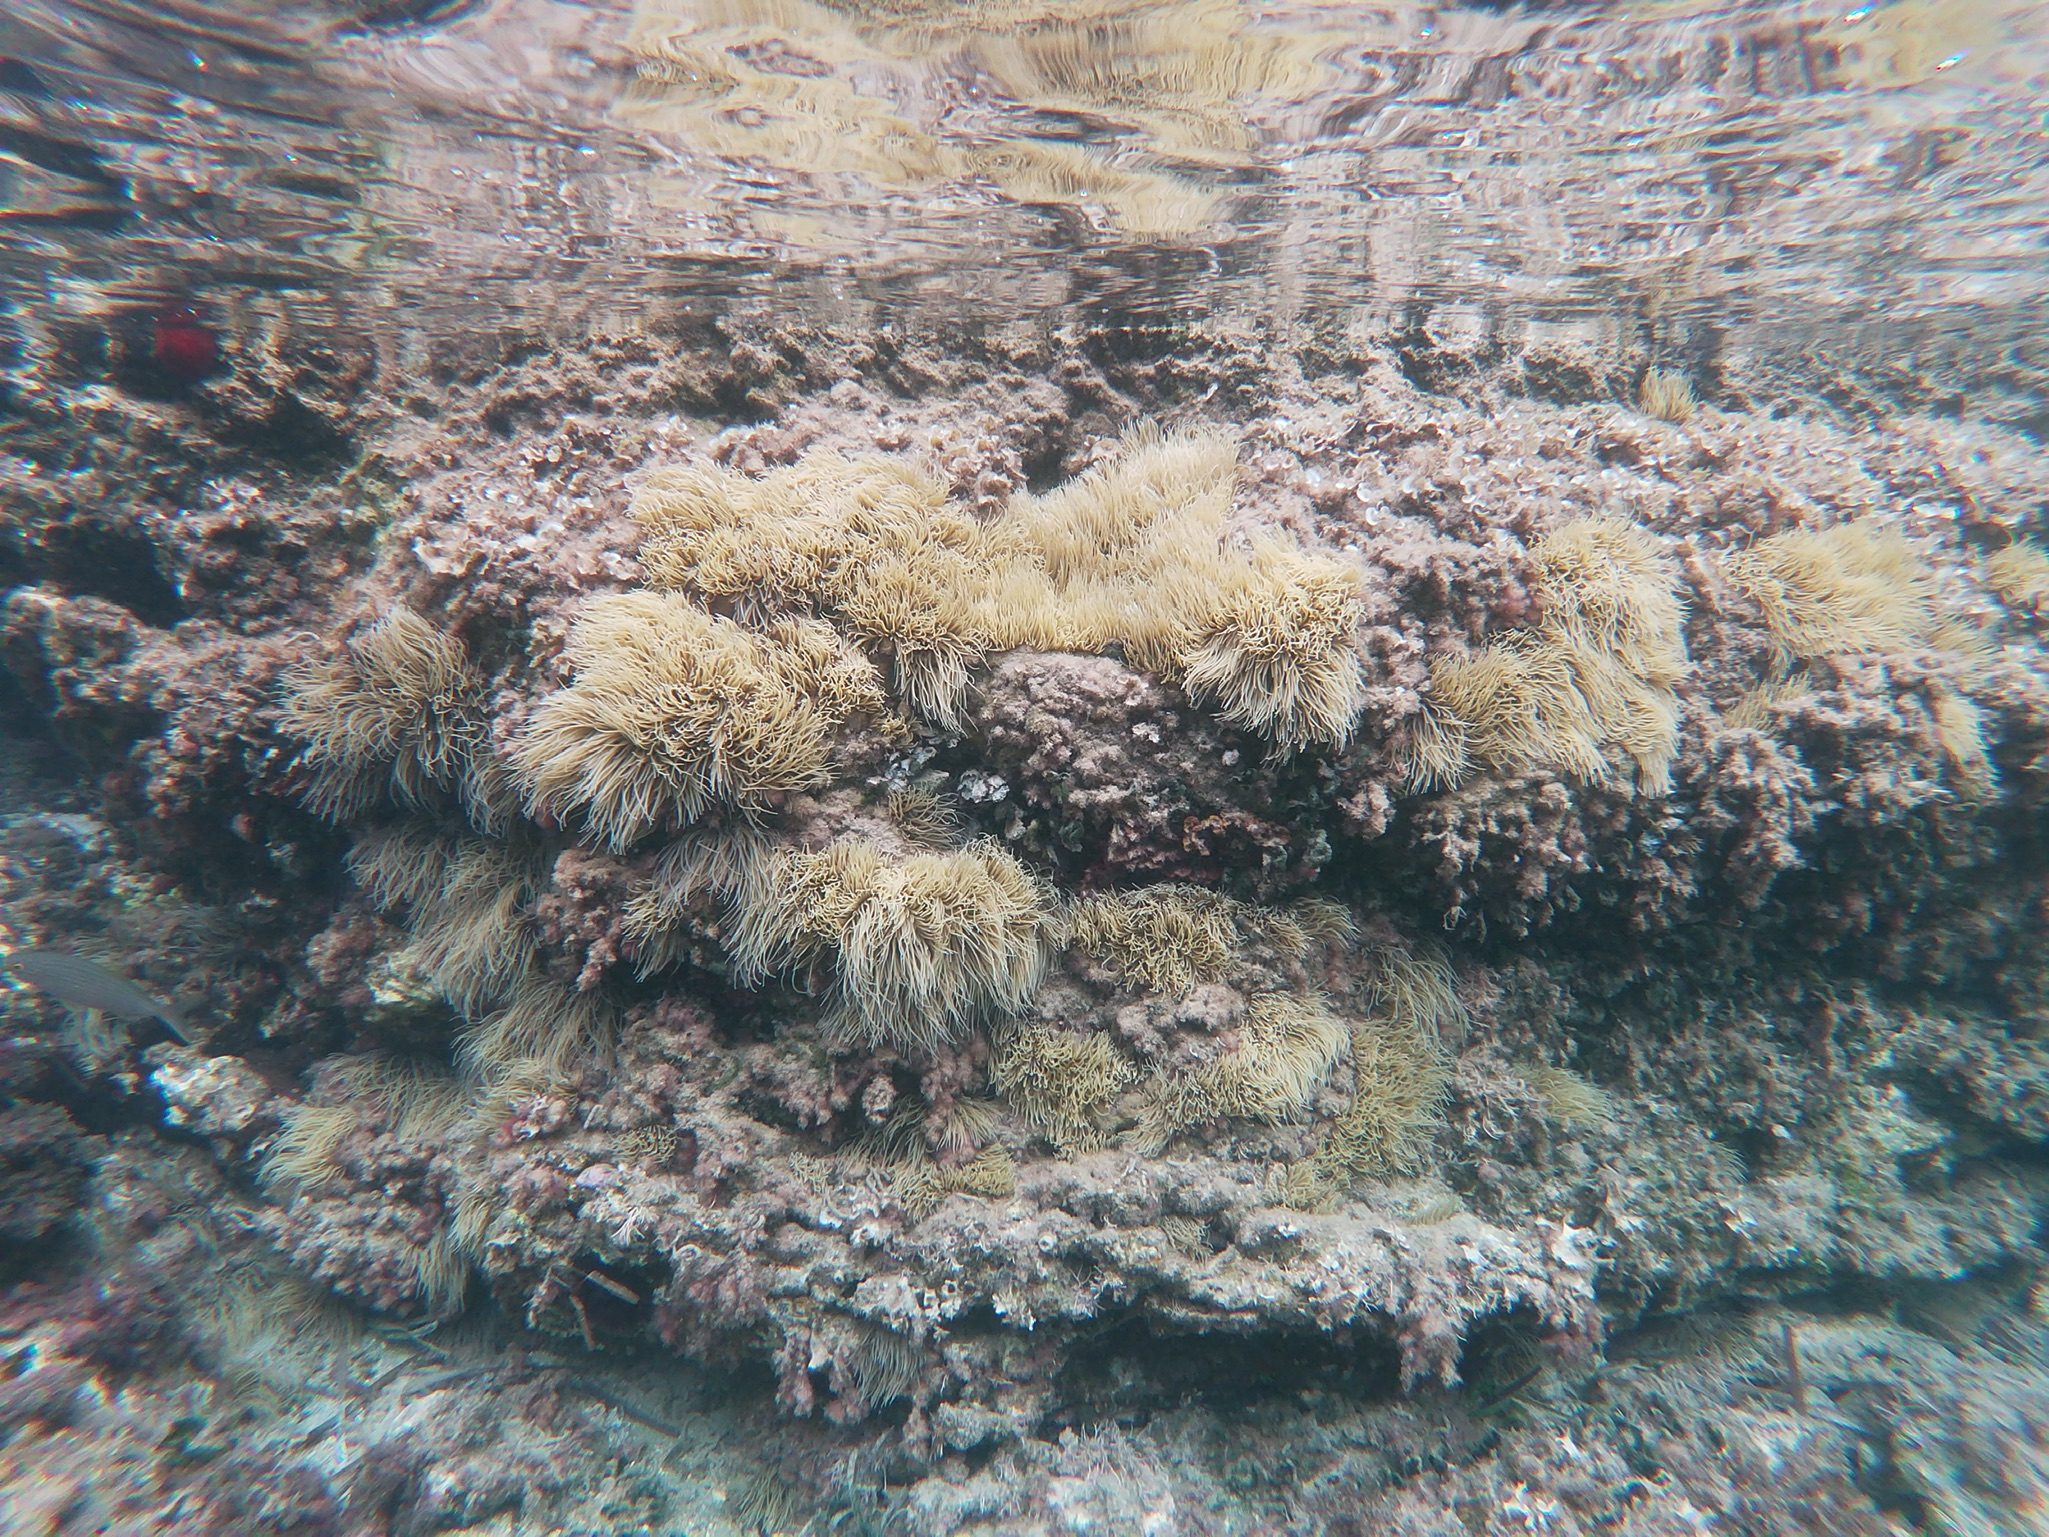 Arrecife